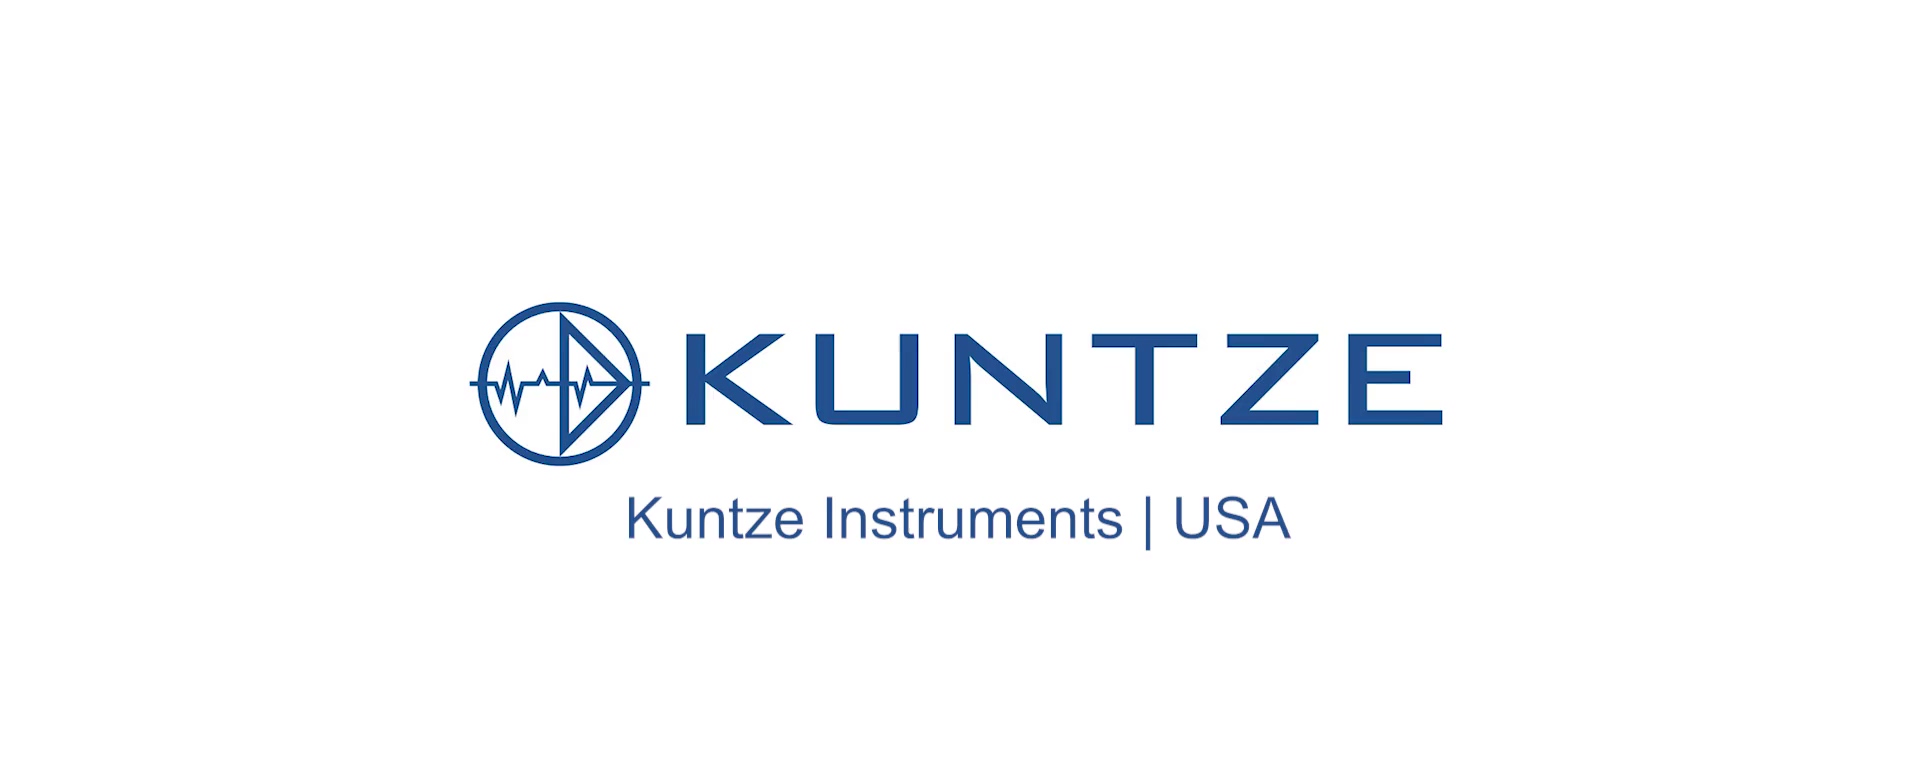 Kuntze Instruments _ USA V4 082620